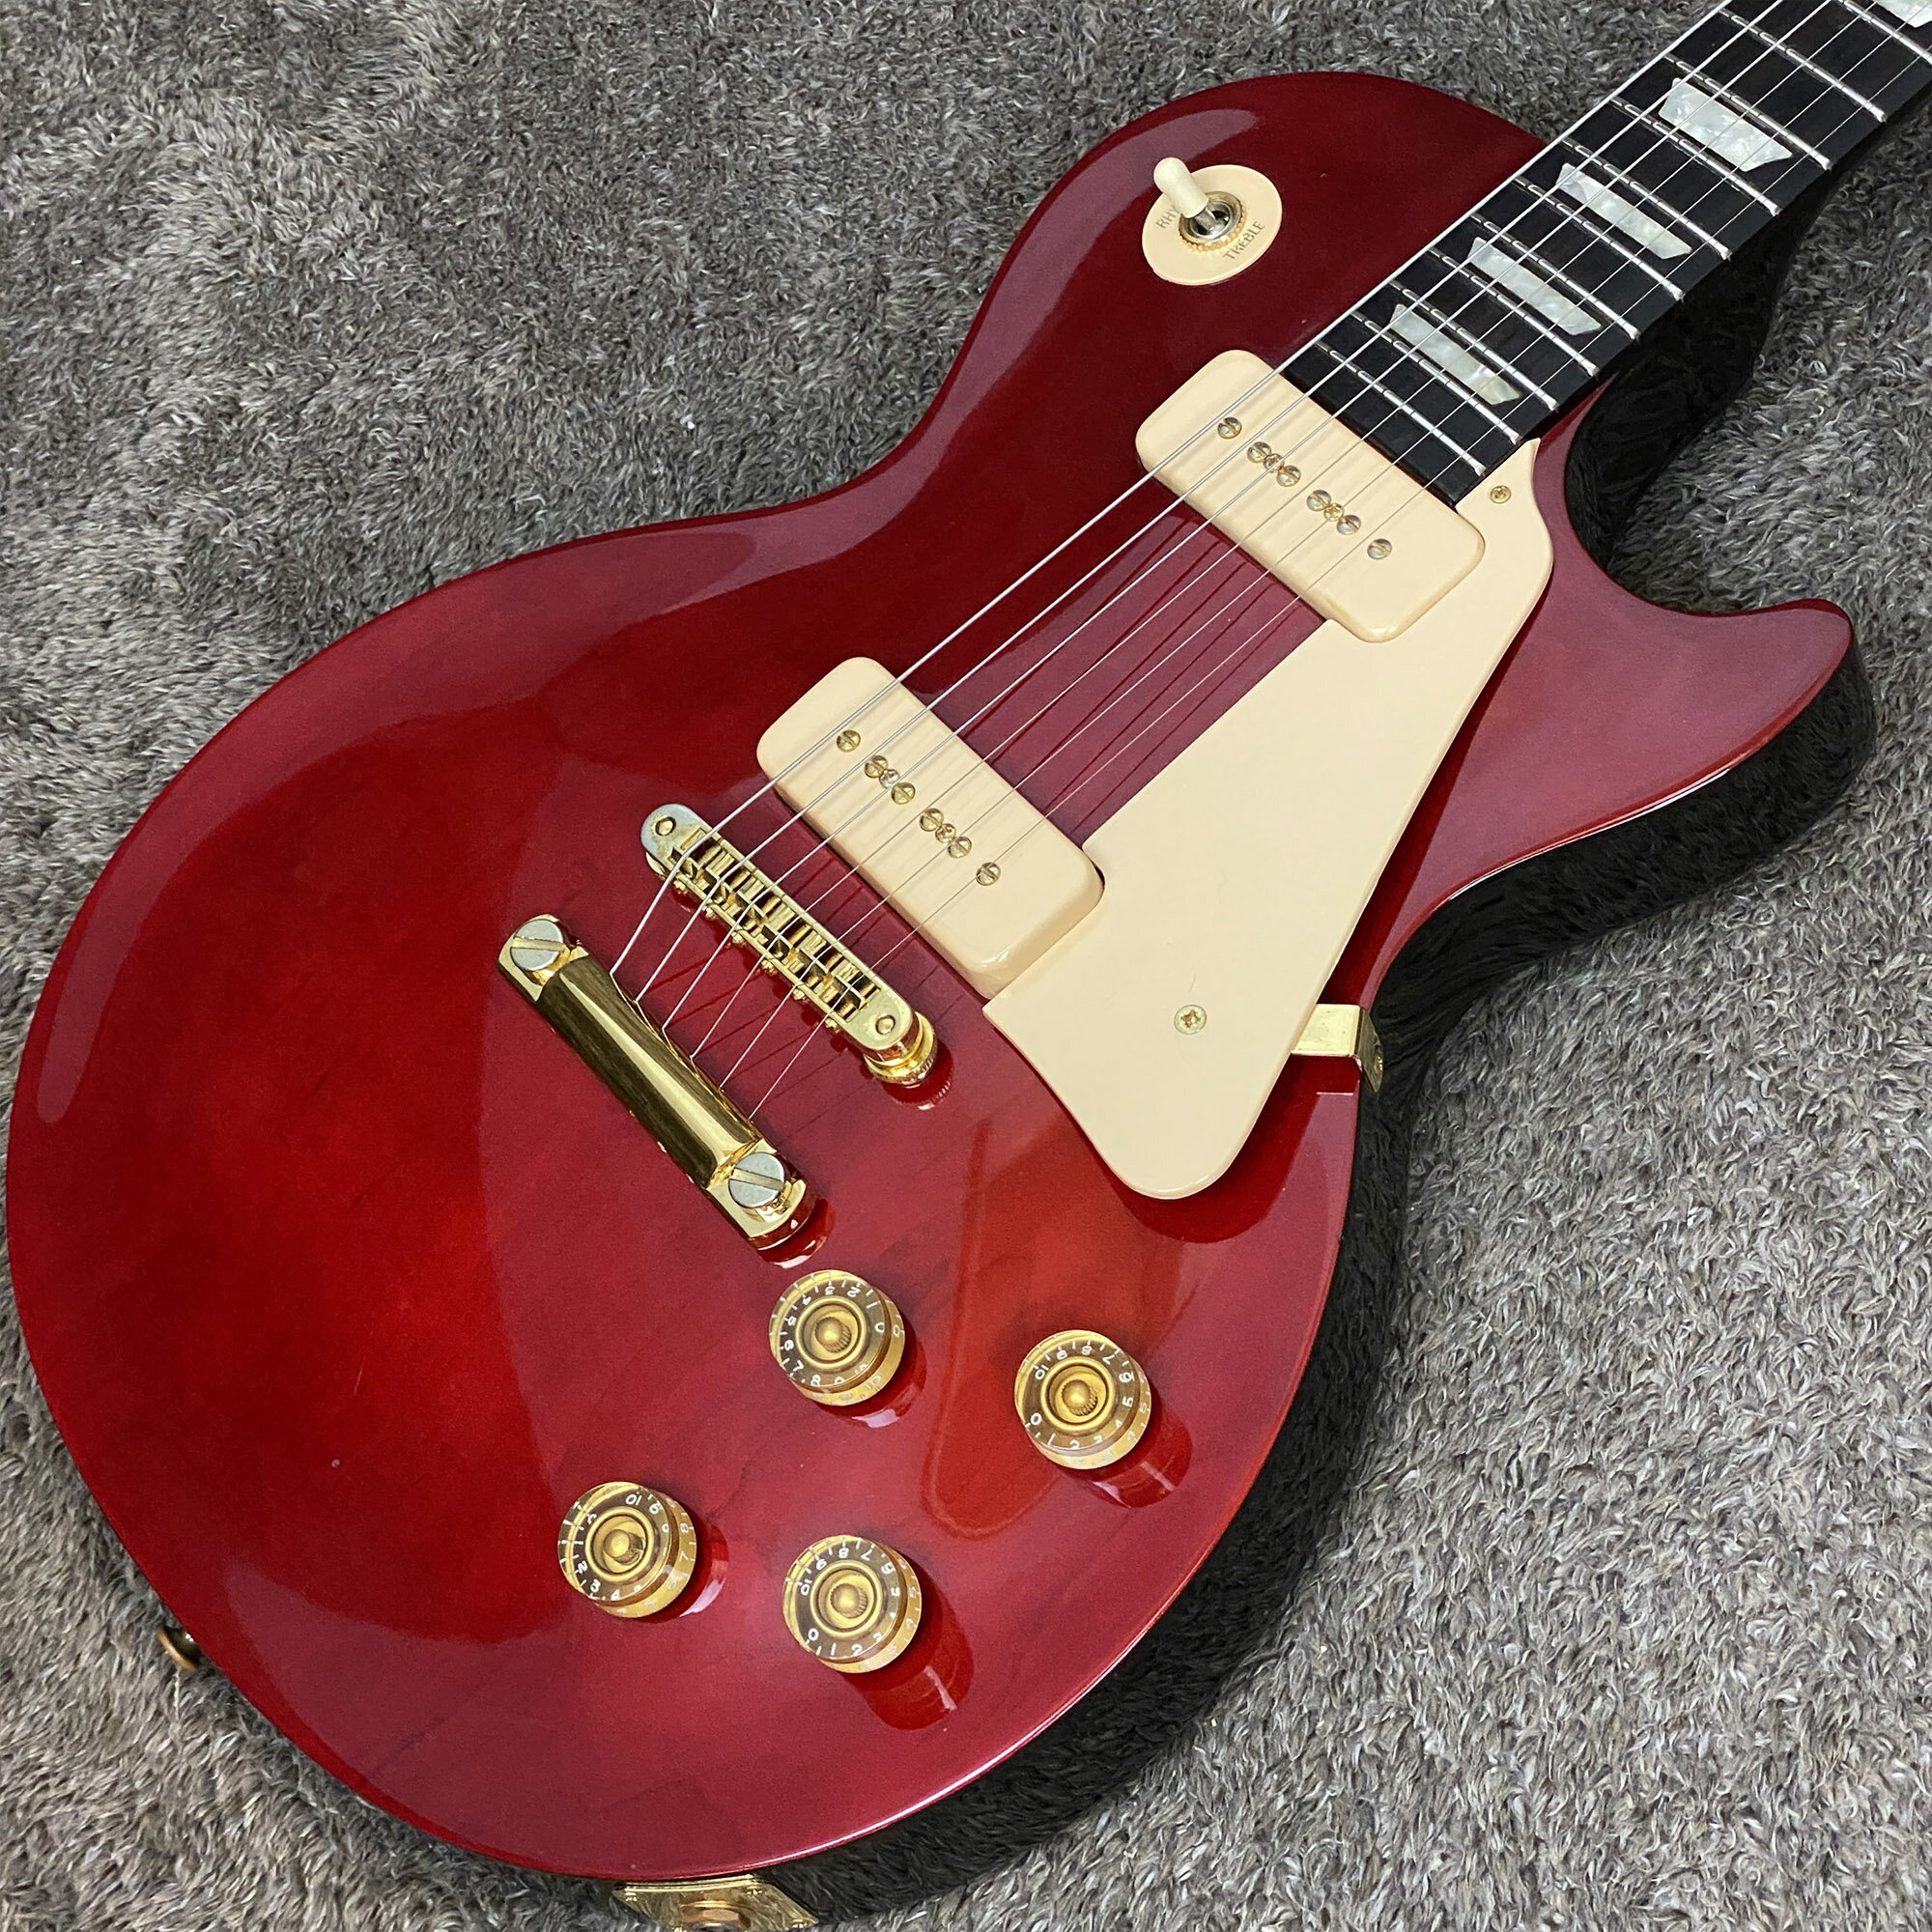 【送料無料】Gibson / Les Paul Studio Gem Series Ruby Red【中古】【楽器/エレキギター/Gibson/ギブソン/Les Paul Studio/レスポールスタジオ/Gem Series Ruby/ジェムシリーズ/ルビー/1997年製/純正ハードケース】